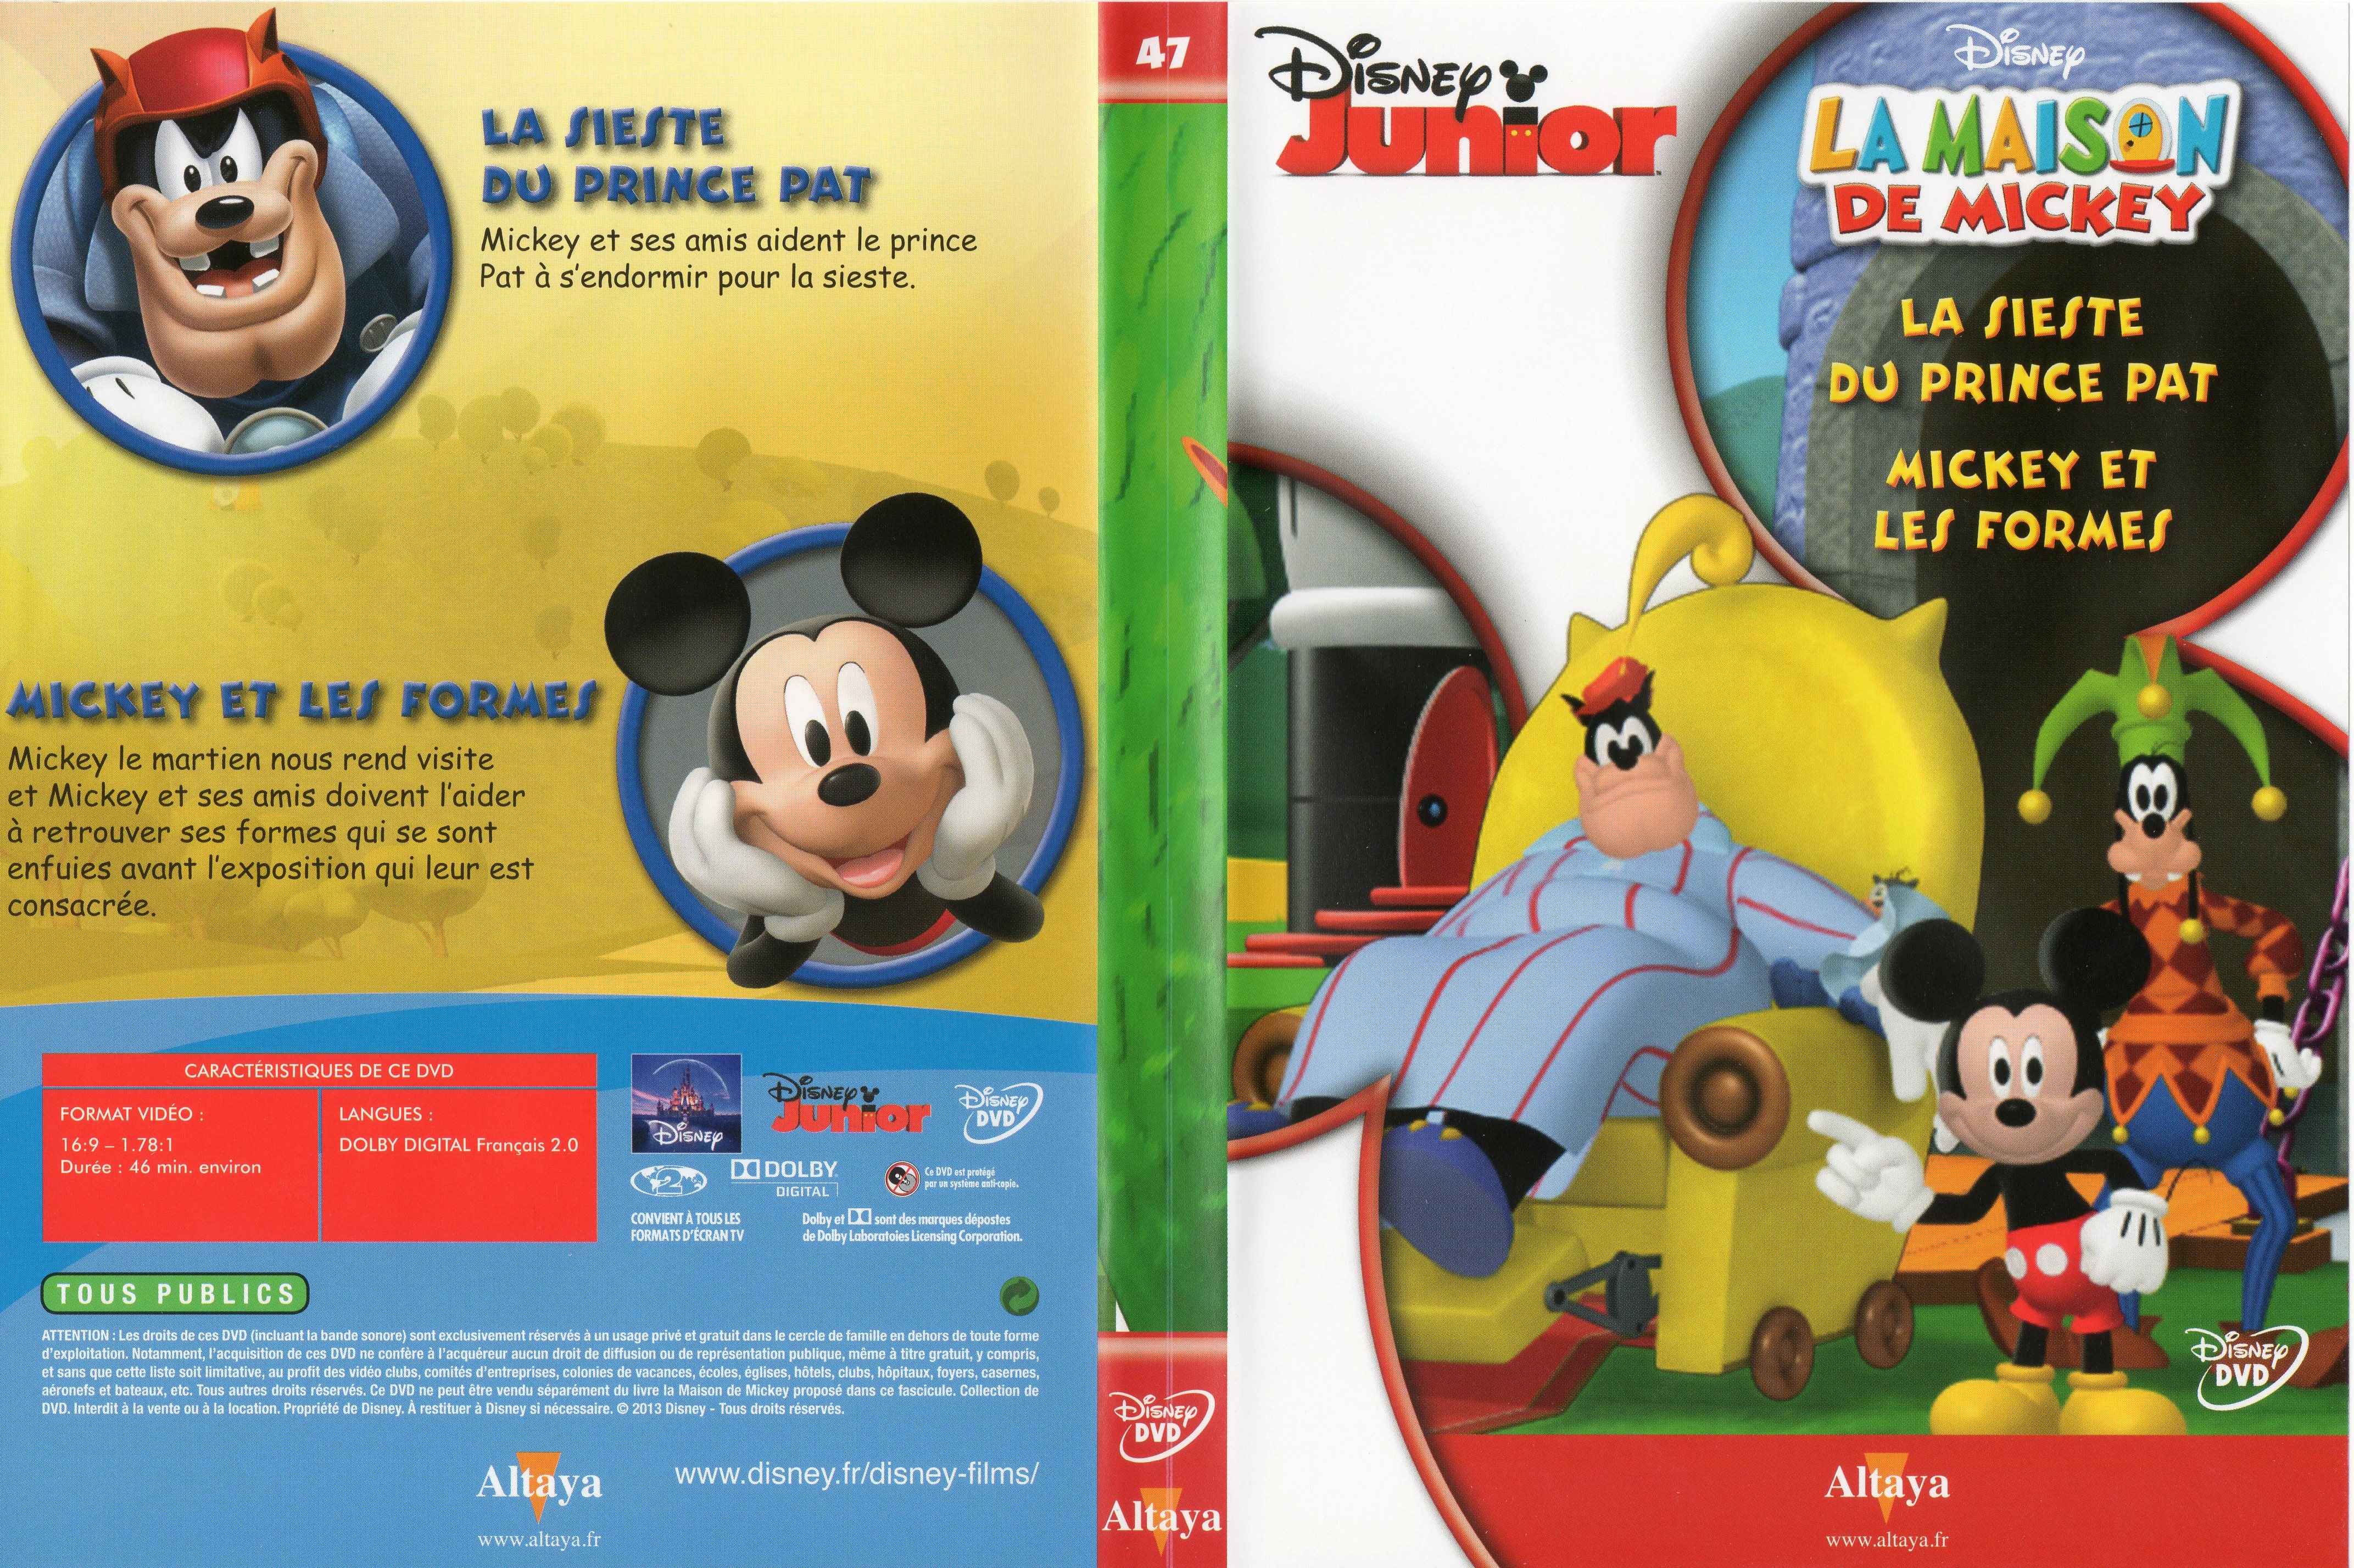 Jaquette DVD La maison de Mickey DVD 47